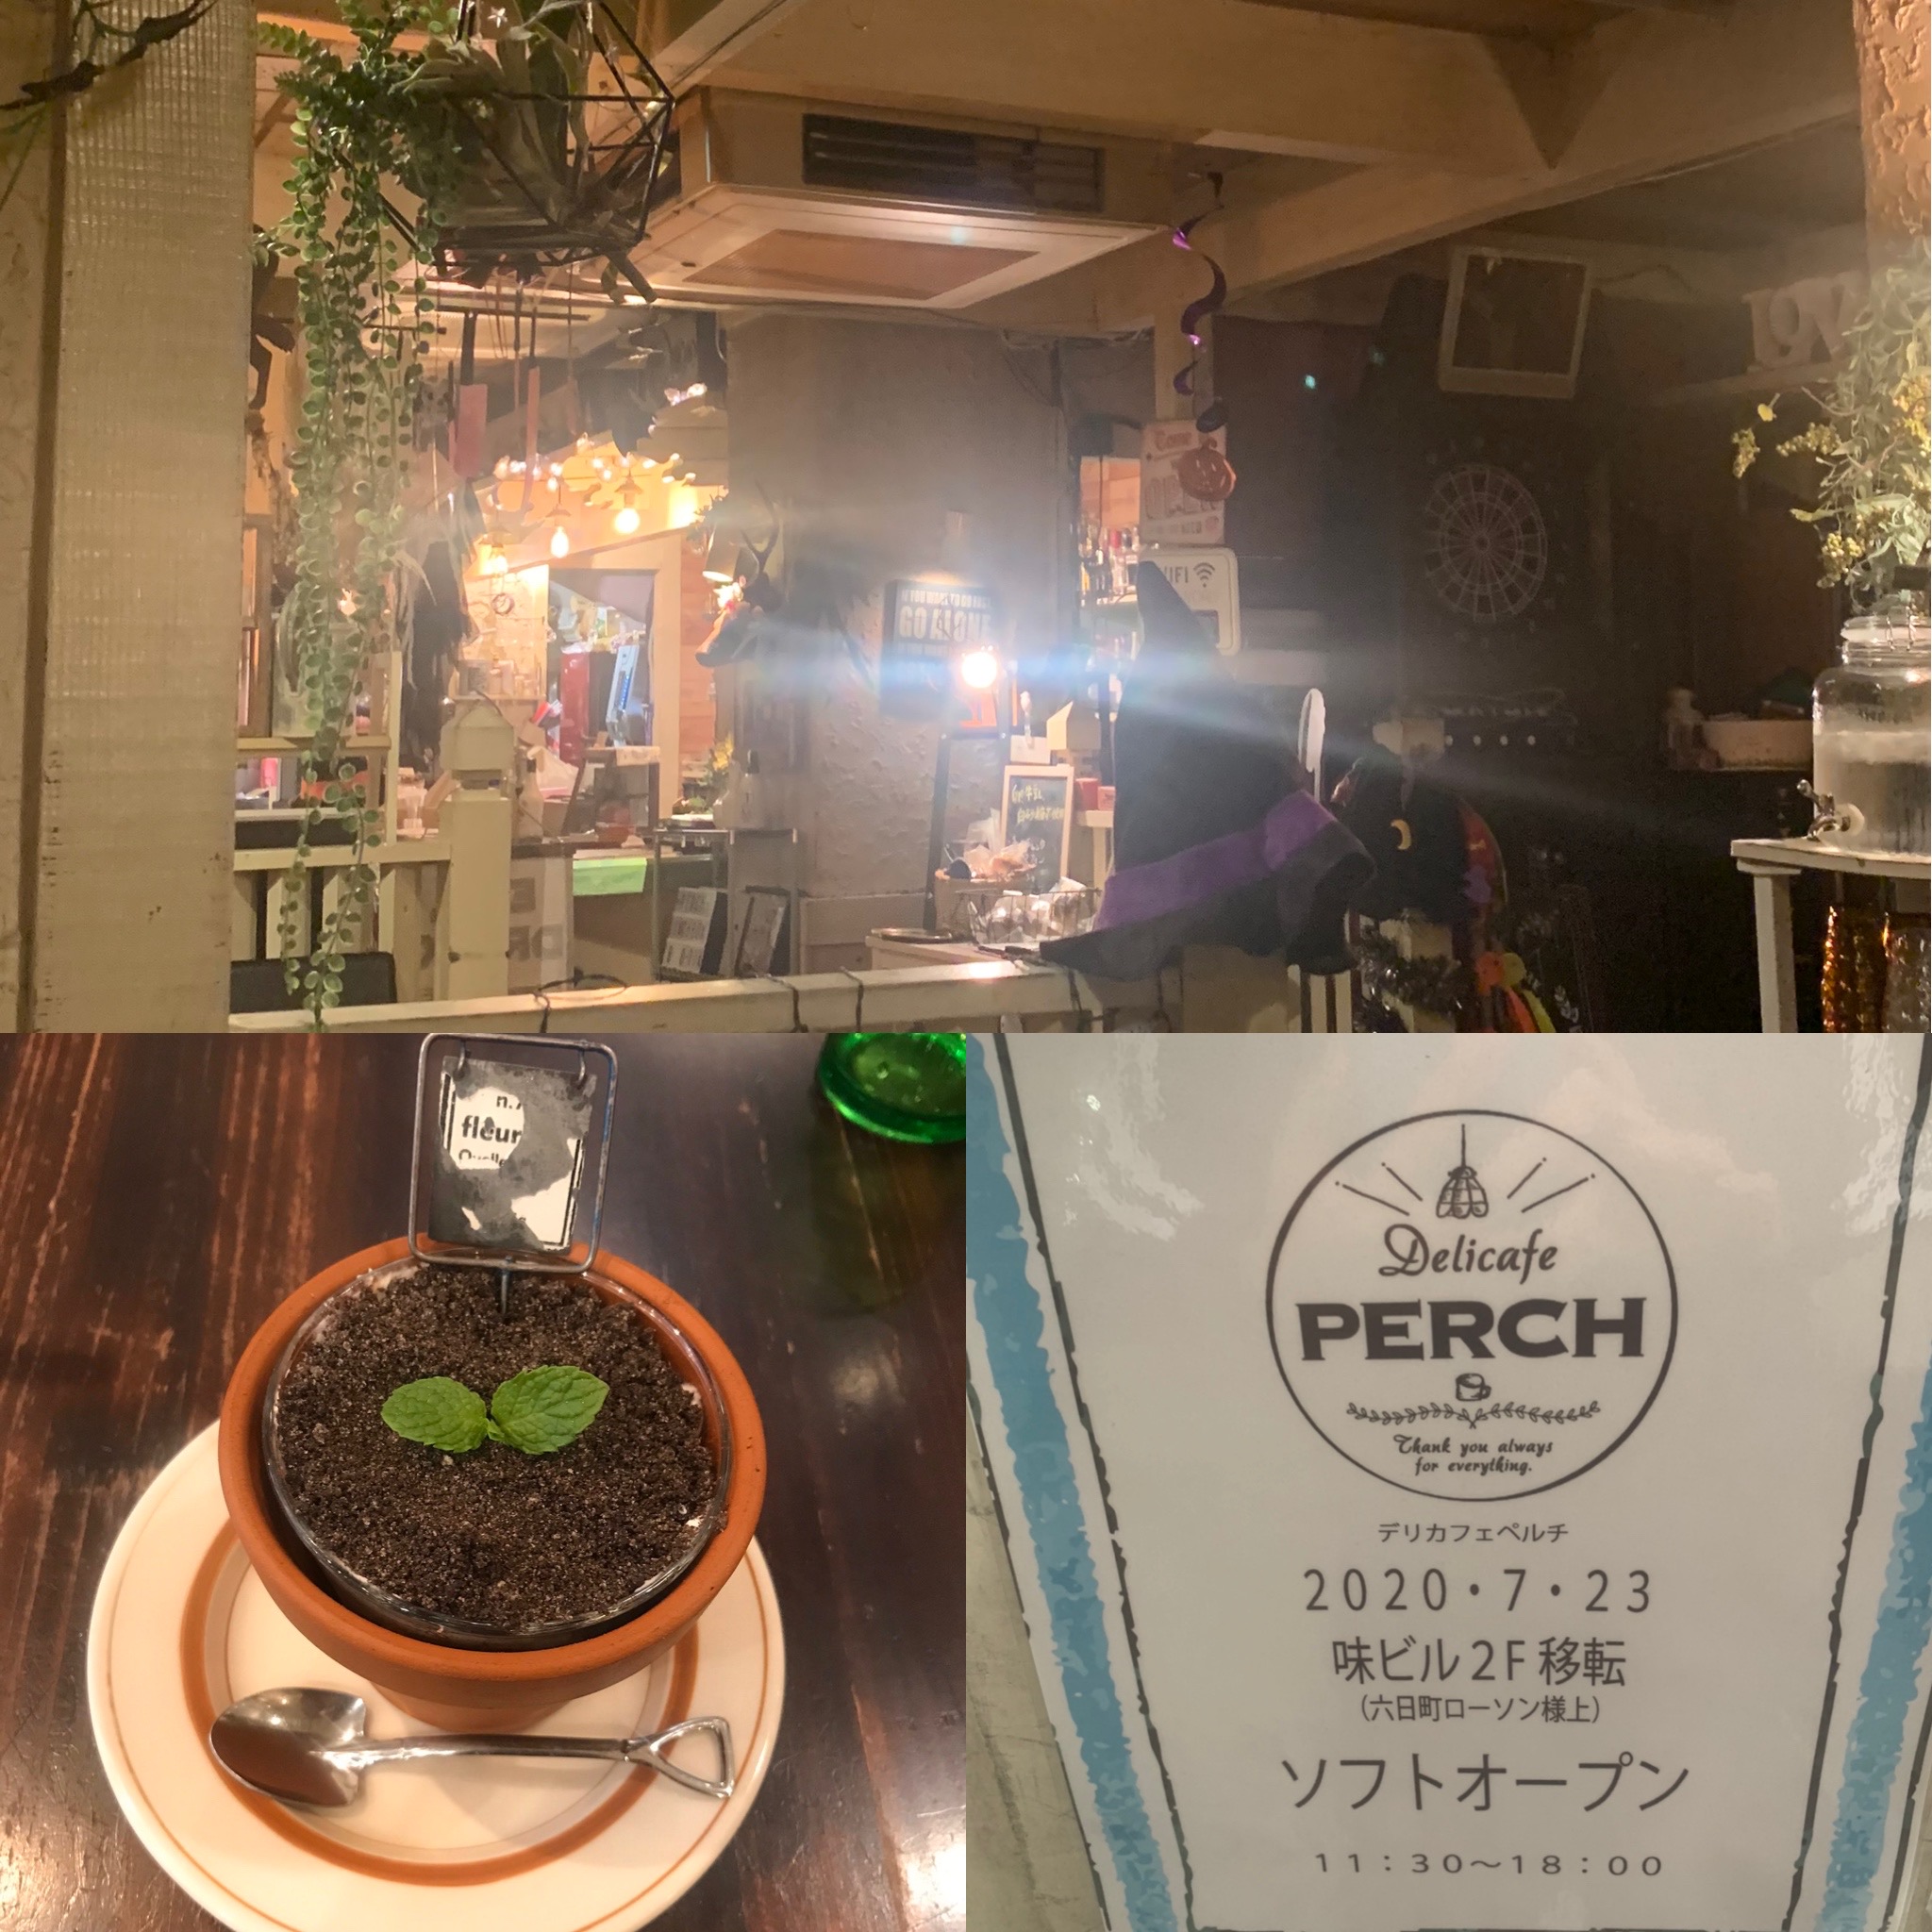 ラテプリが味わえる 六日町味ビル2階 Cafe Bar Soultosoul さんに統合移転した Deli Cafe Perch さんに行ってきました